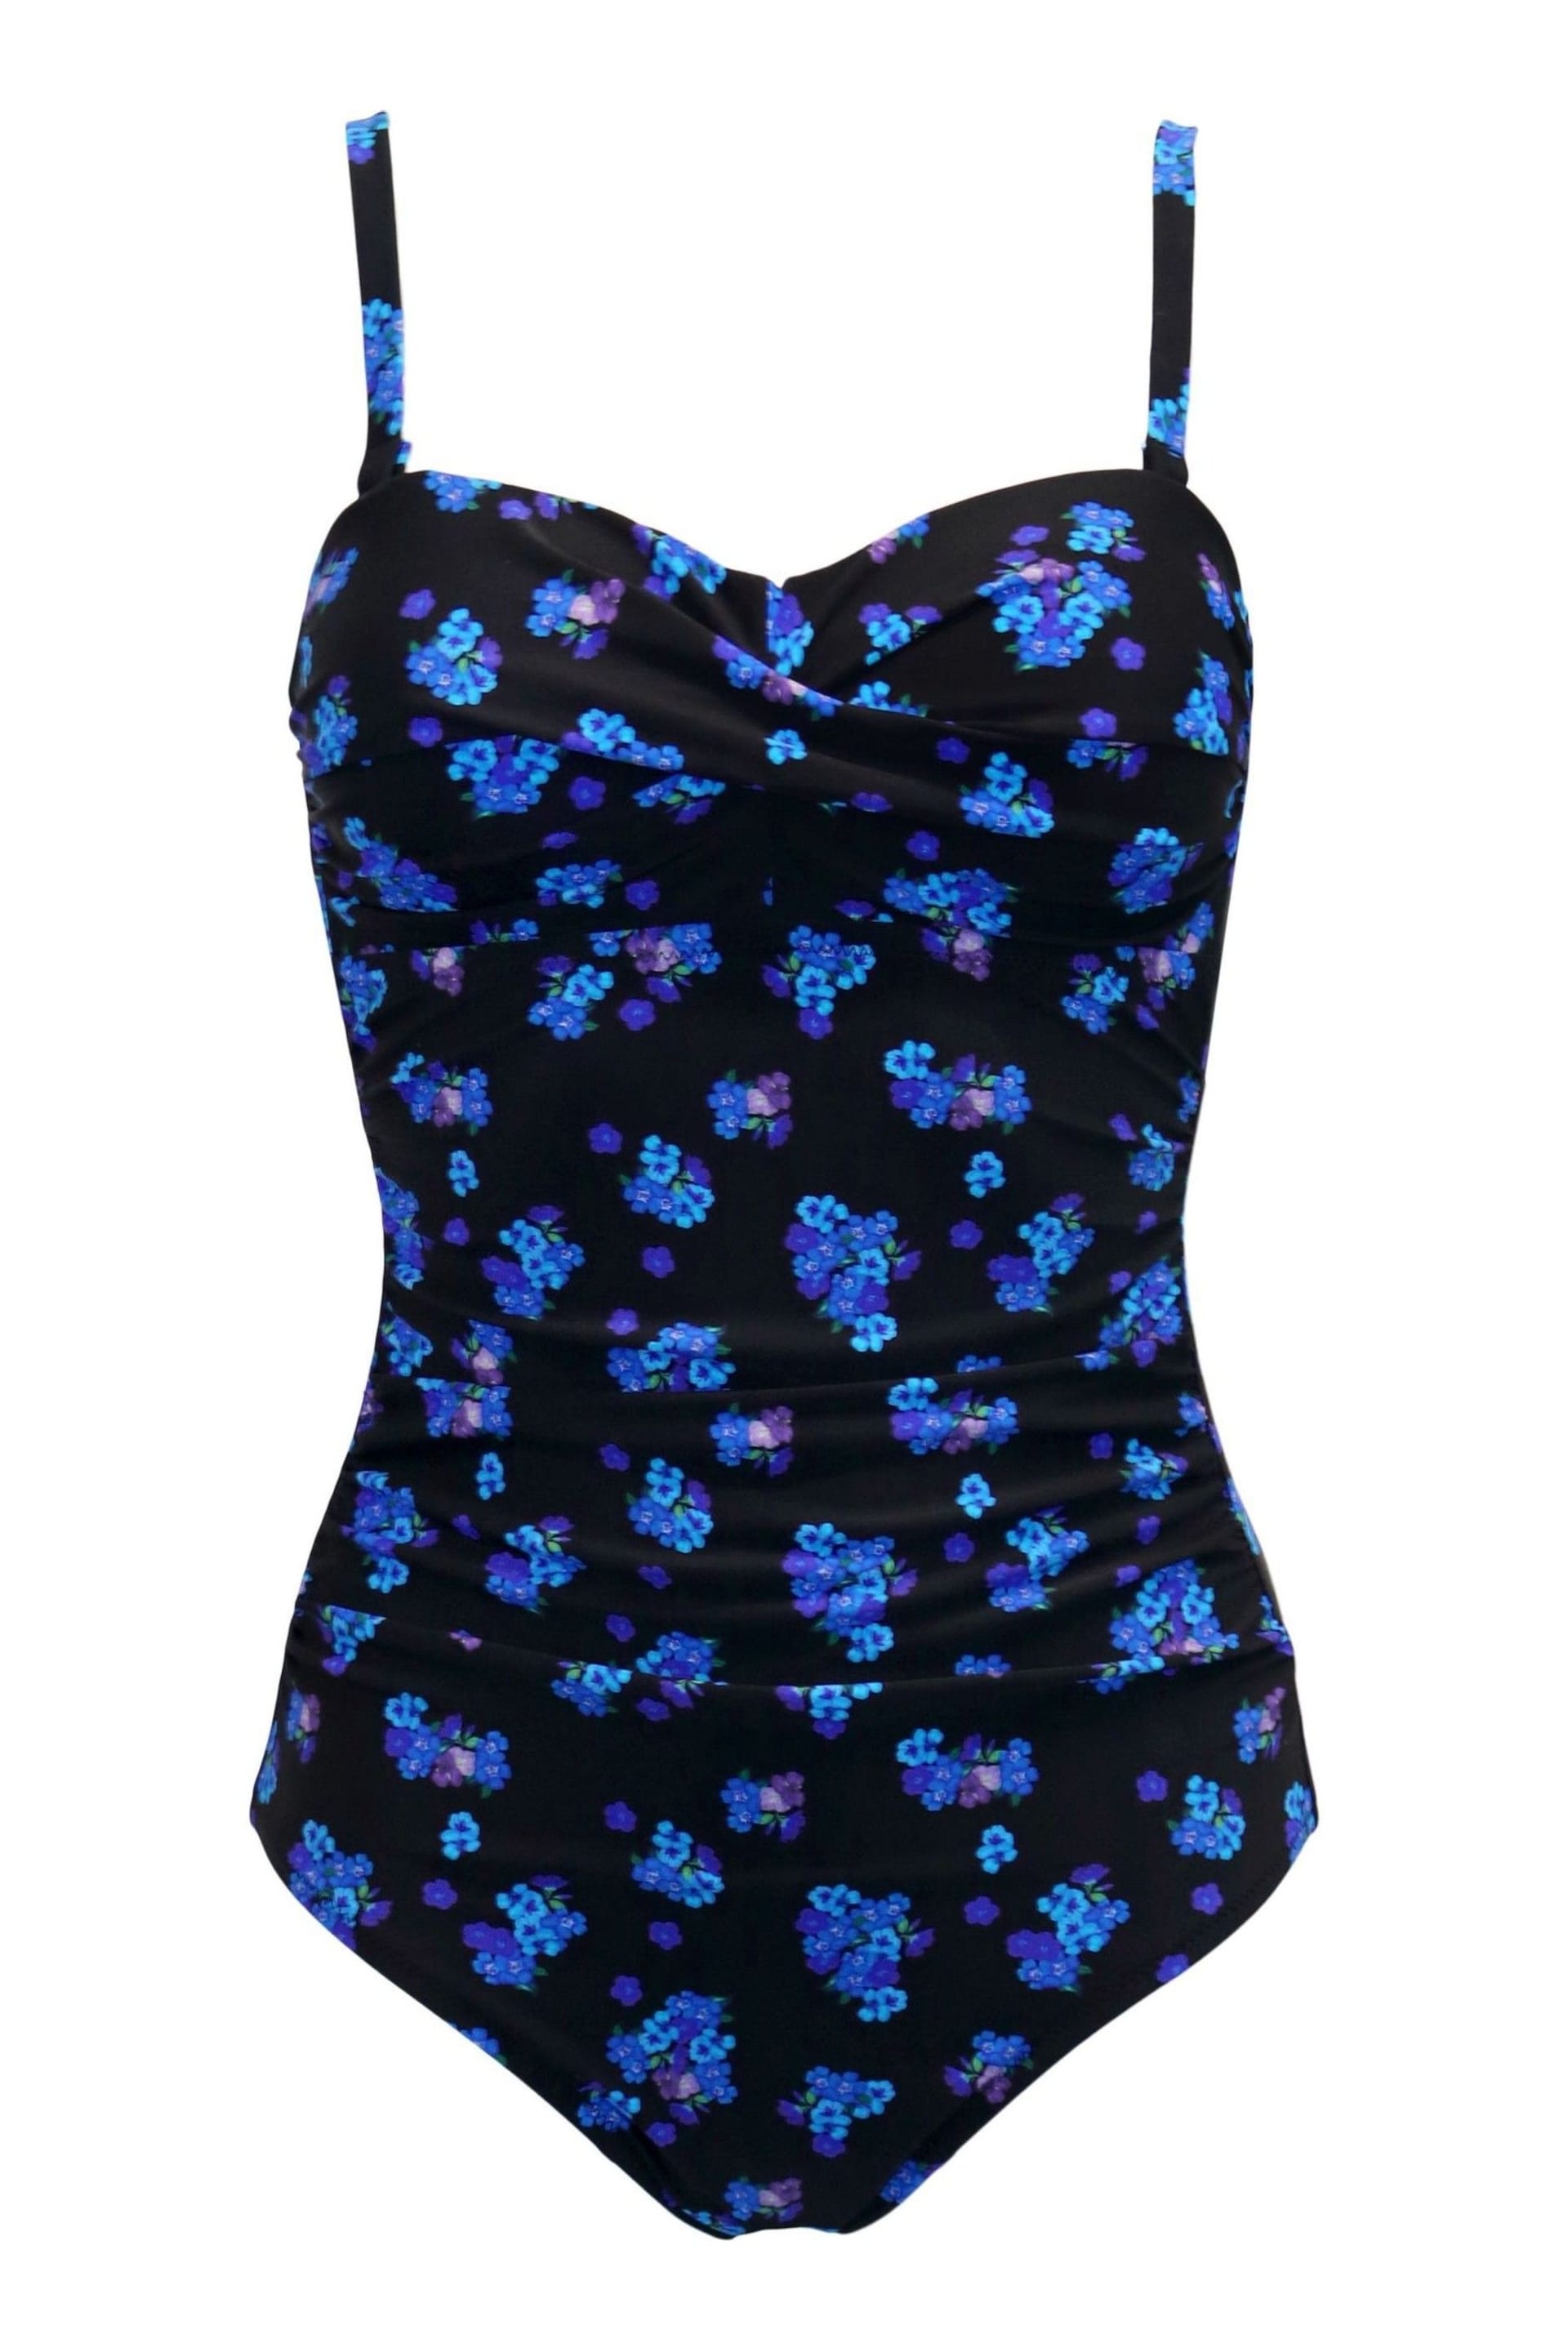 Pour Moi Black & Blue Santa Monica Removable Straps Tummy Control Swimsuit - Image 5 of 6